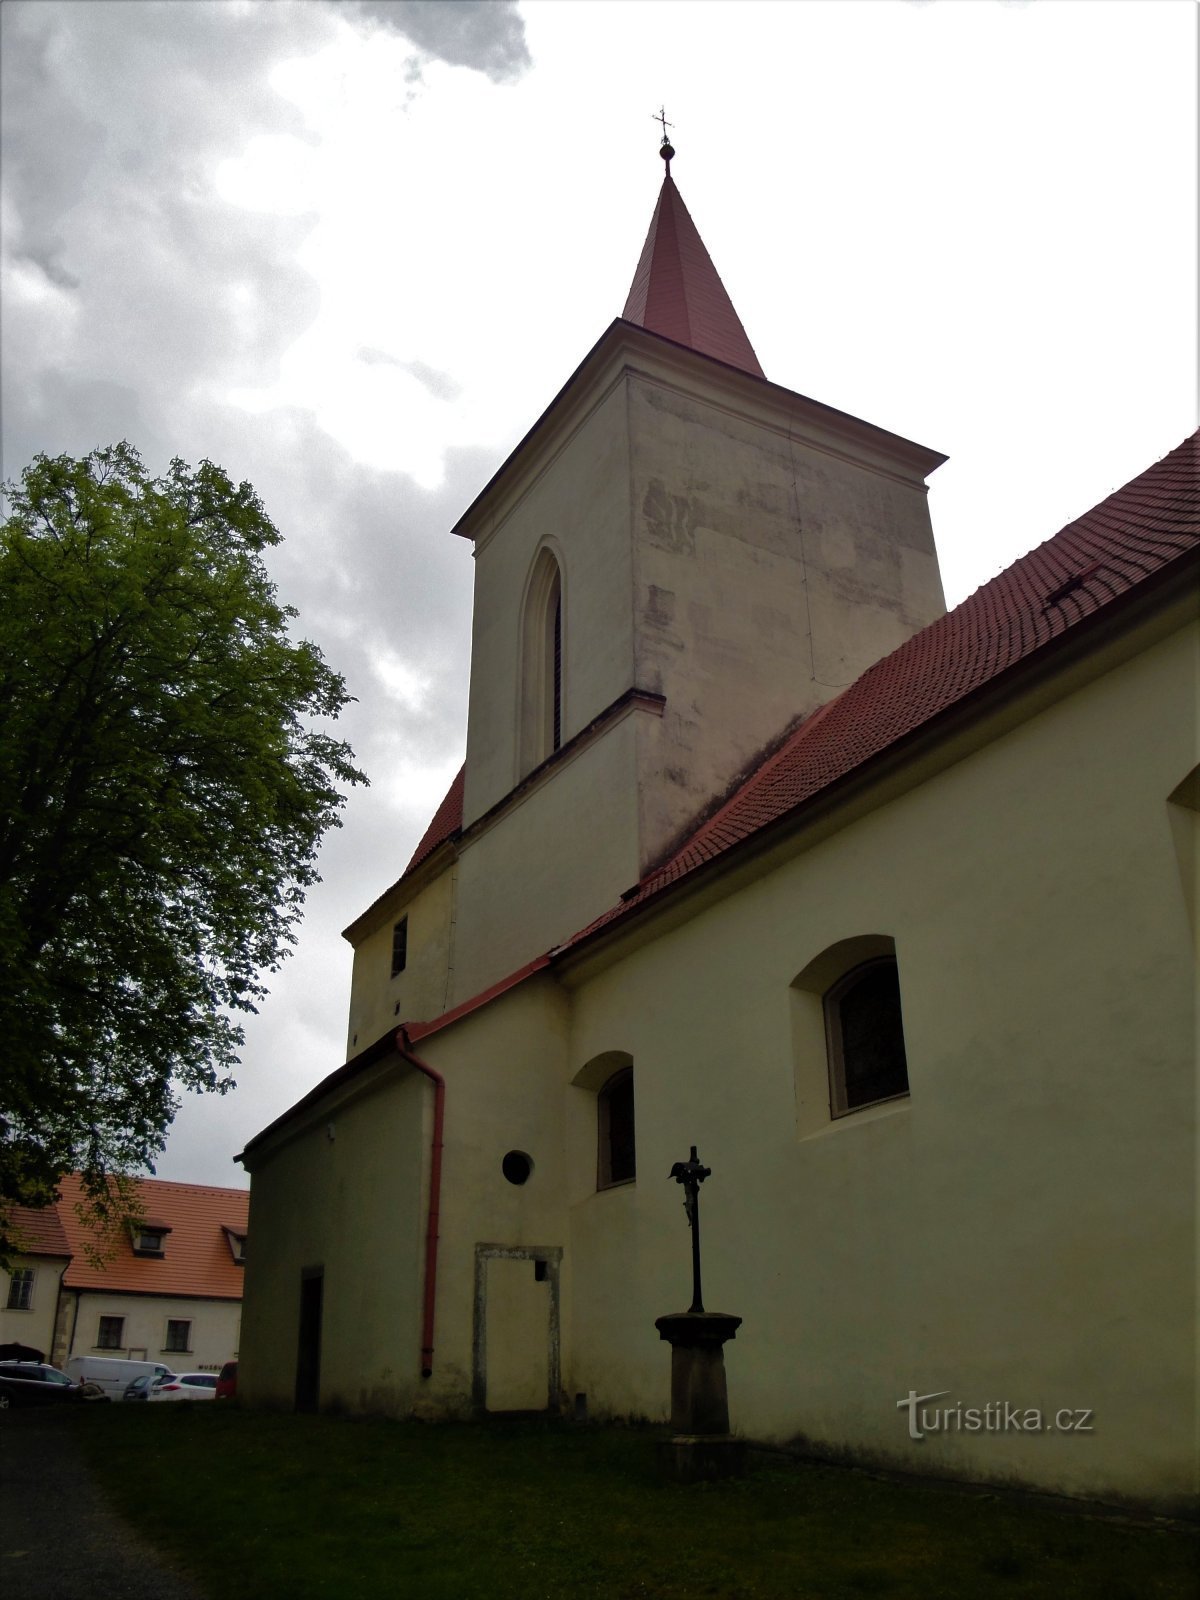 Йилове под Прагой - церковь св. Войтех